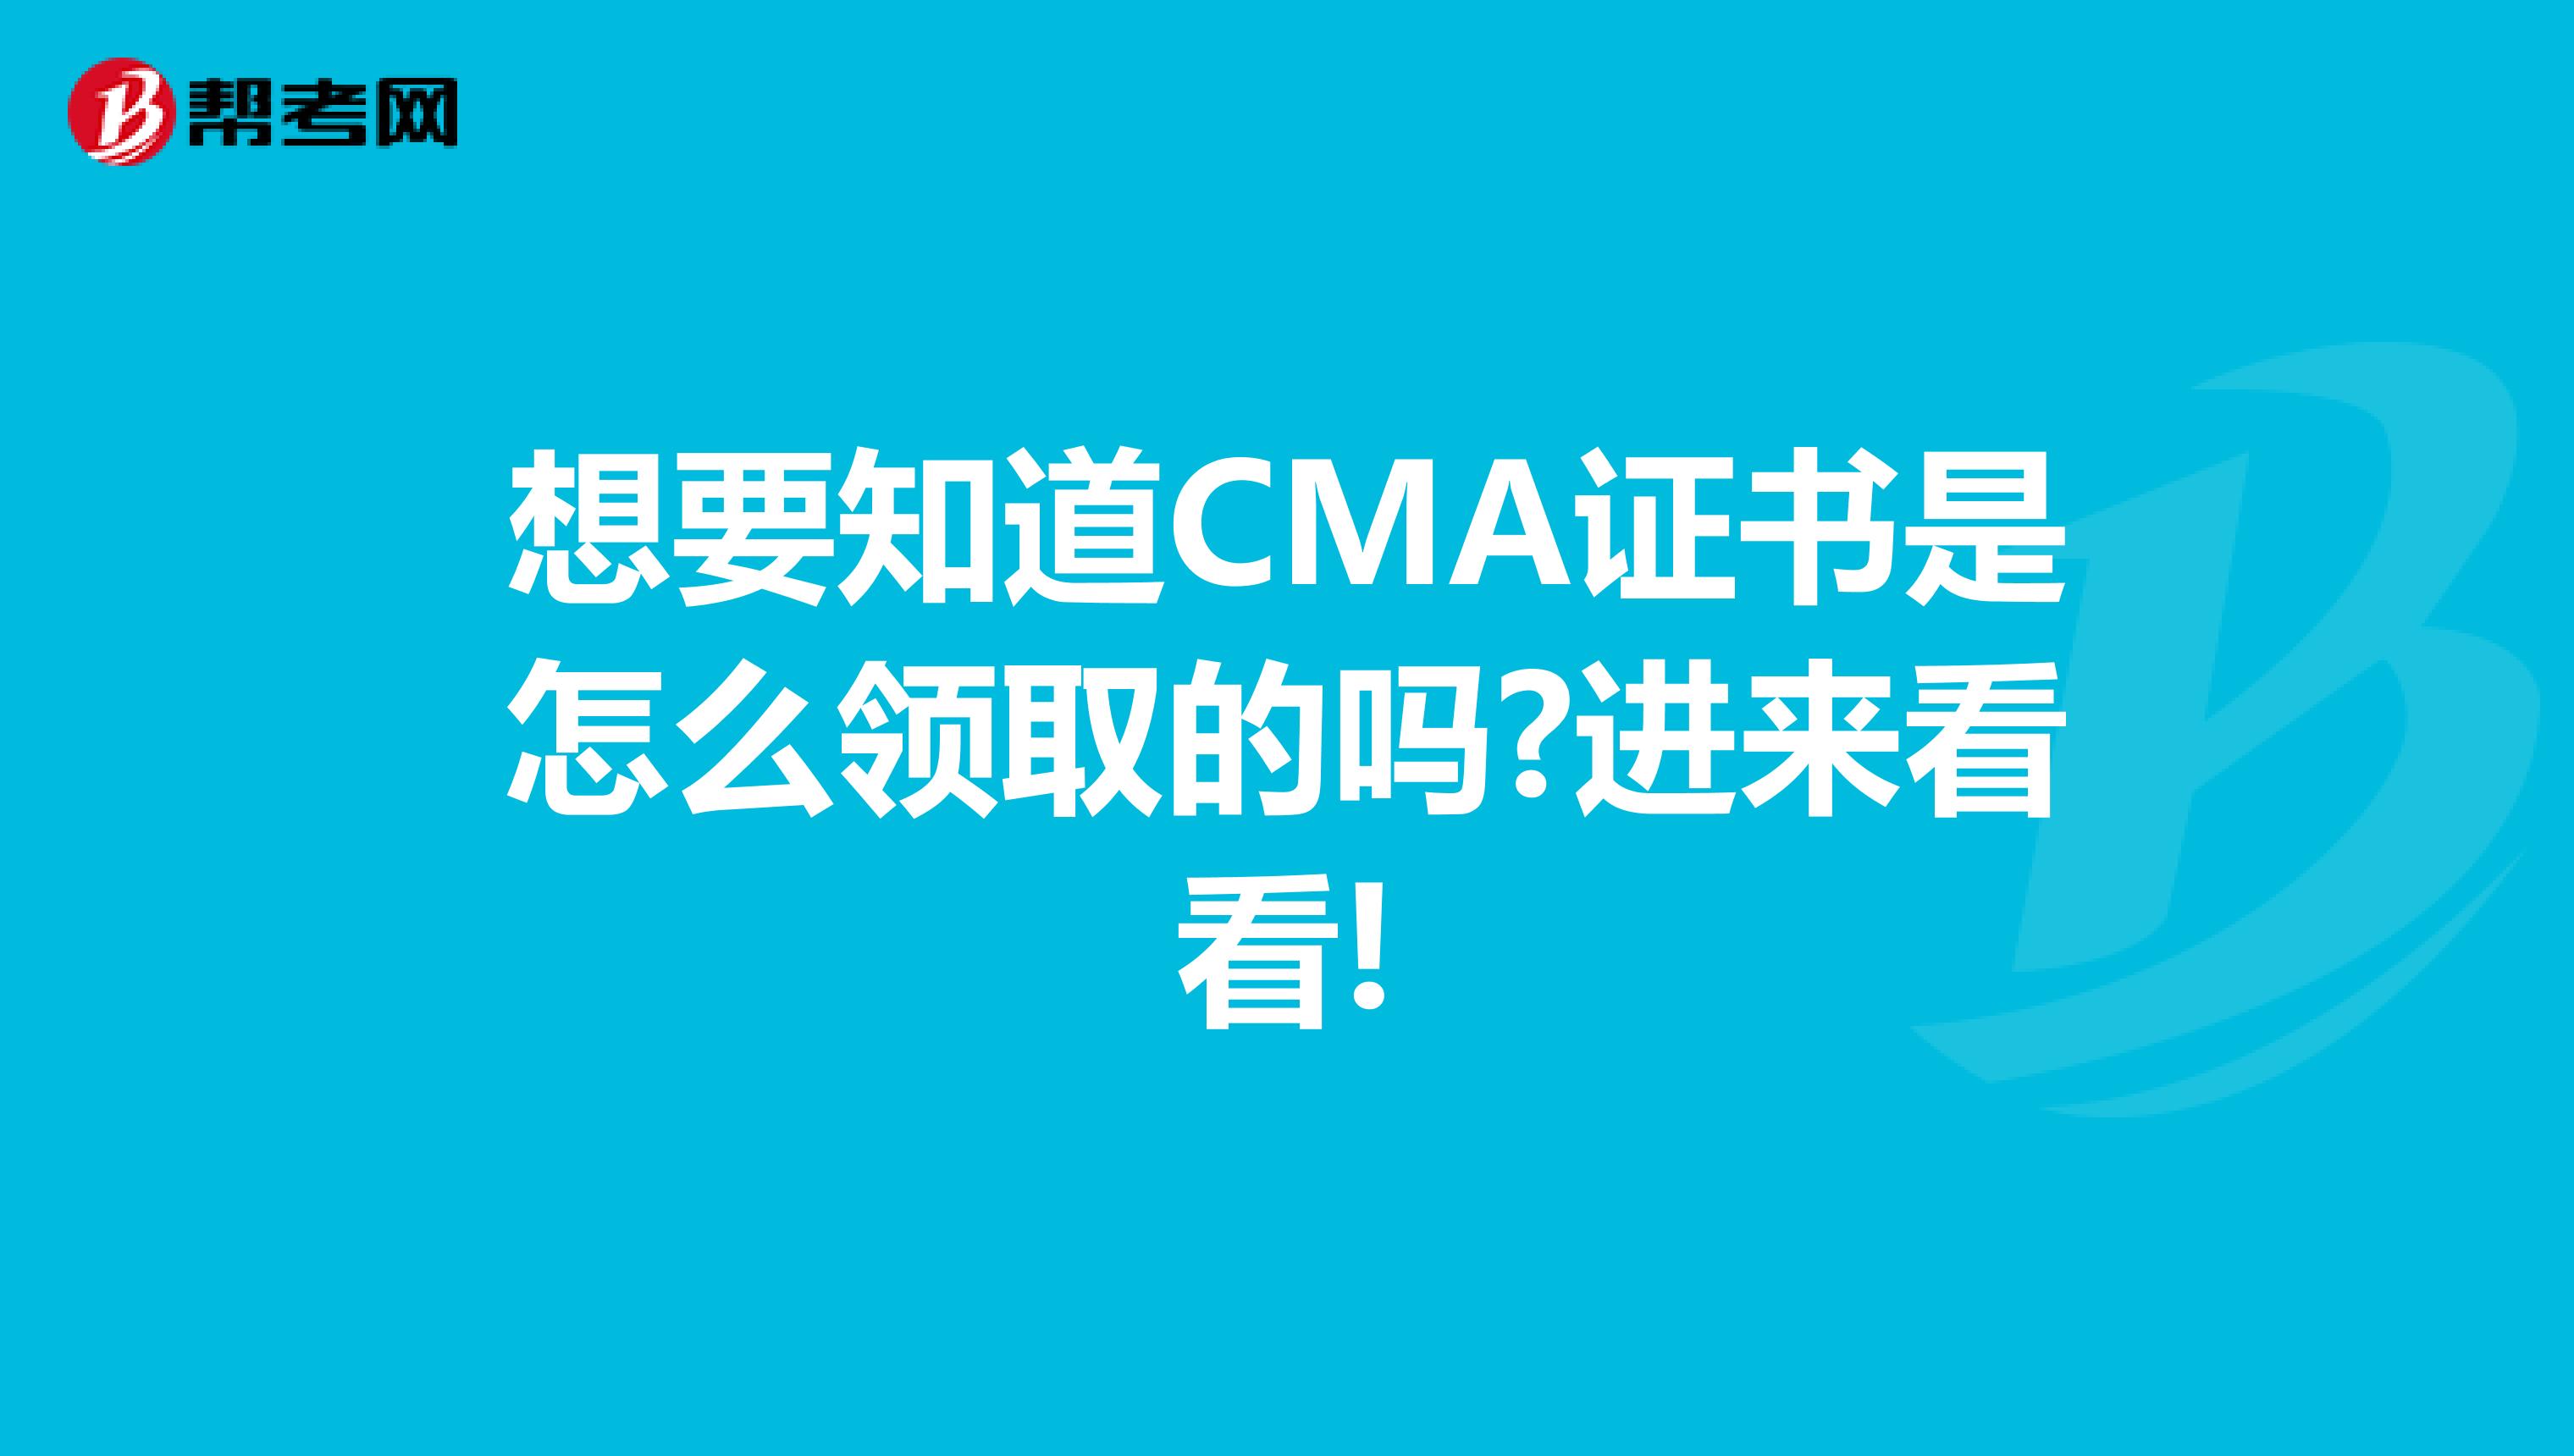 想要知道CMA证书是怎么领取的吗?进来看看!